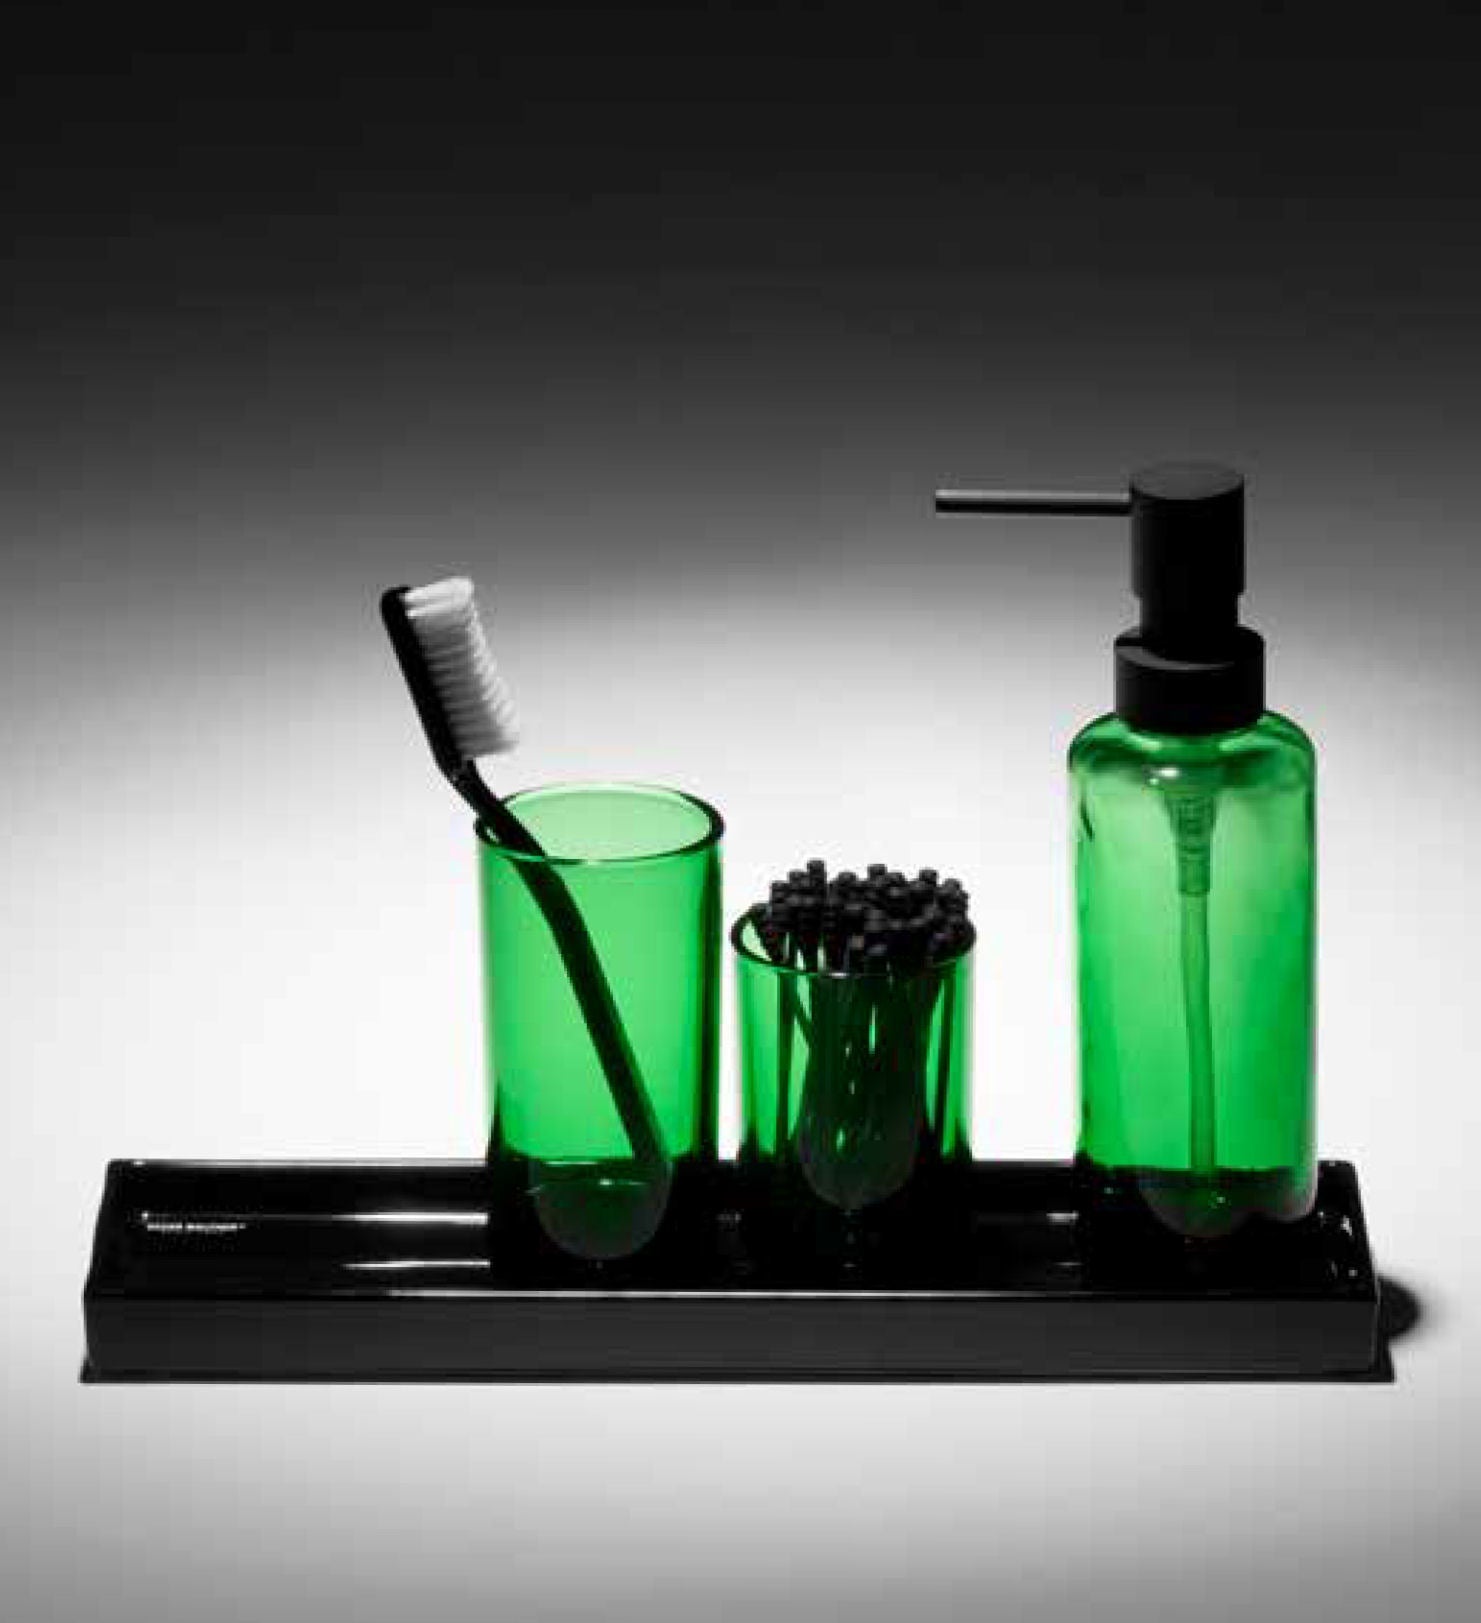 POP UP Bathroom Accessories set of 3pcs | Green, Black, Clear - |VESIMI Design|